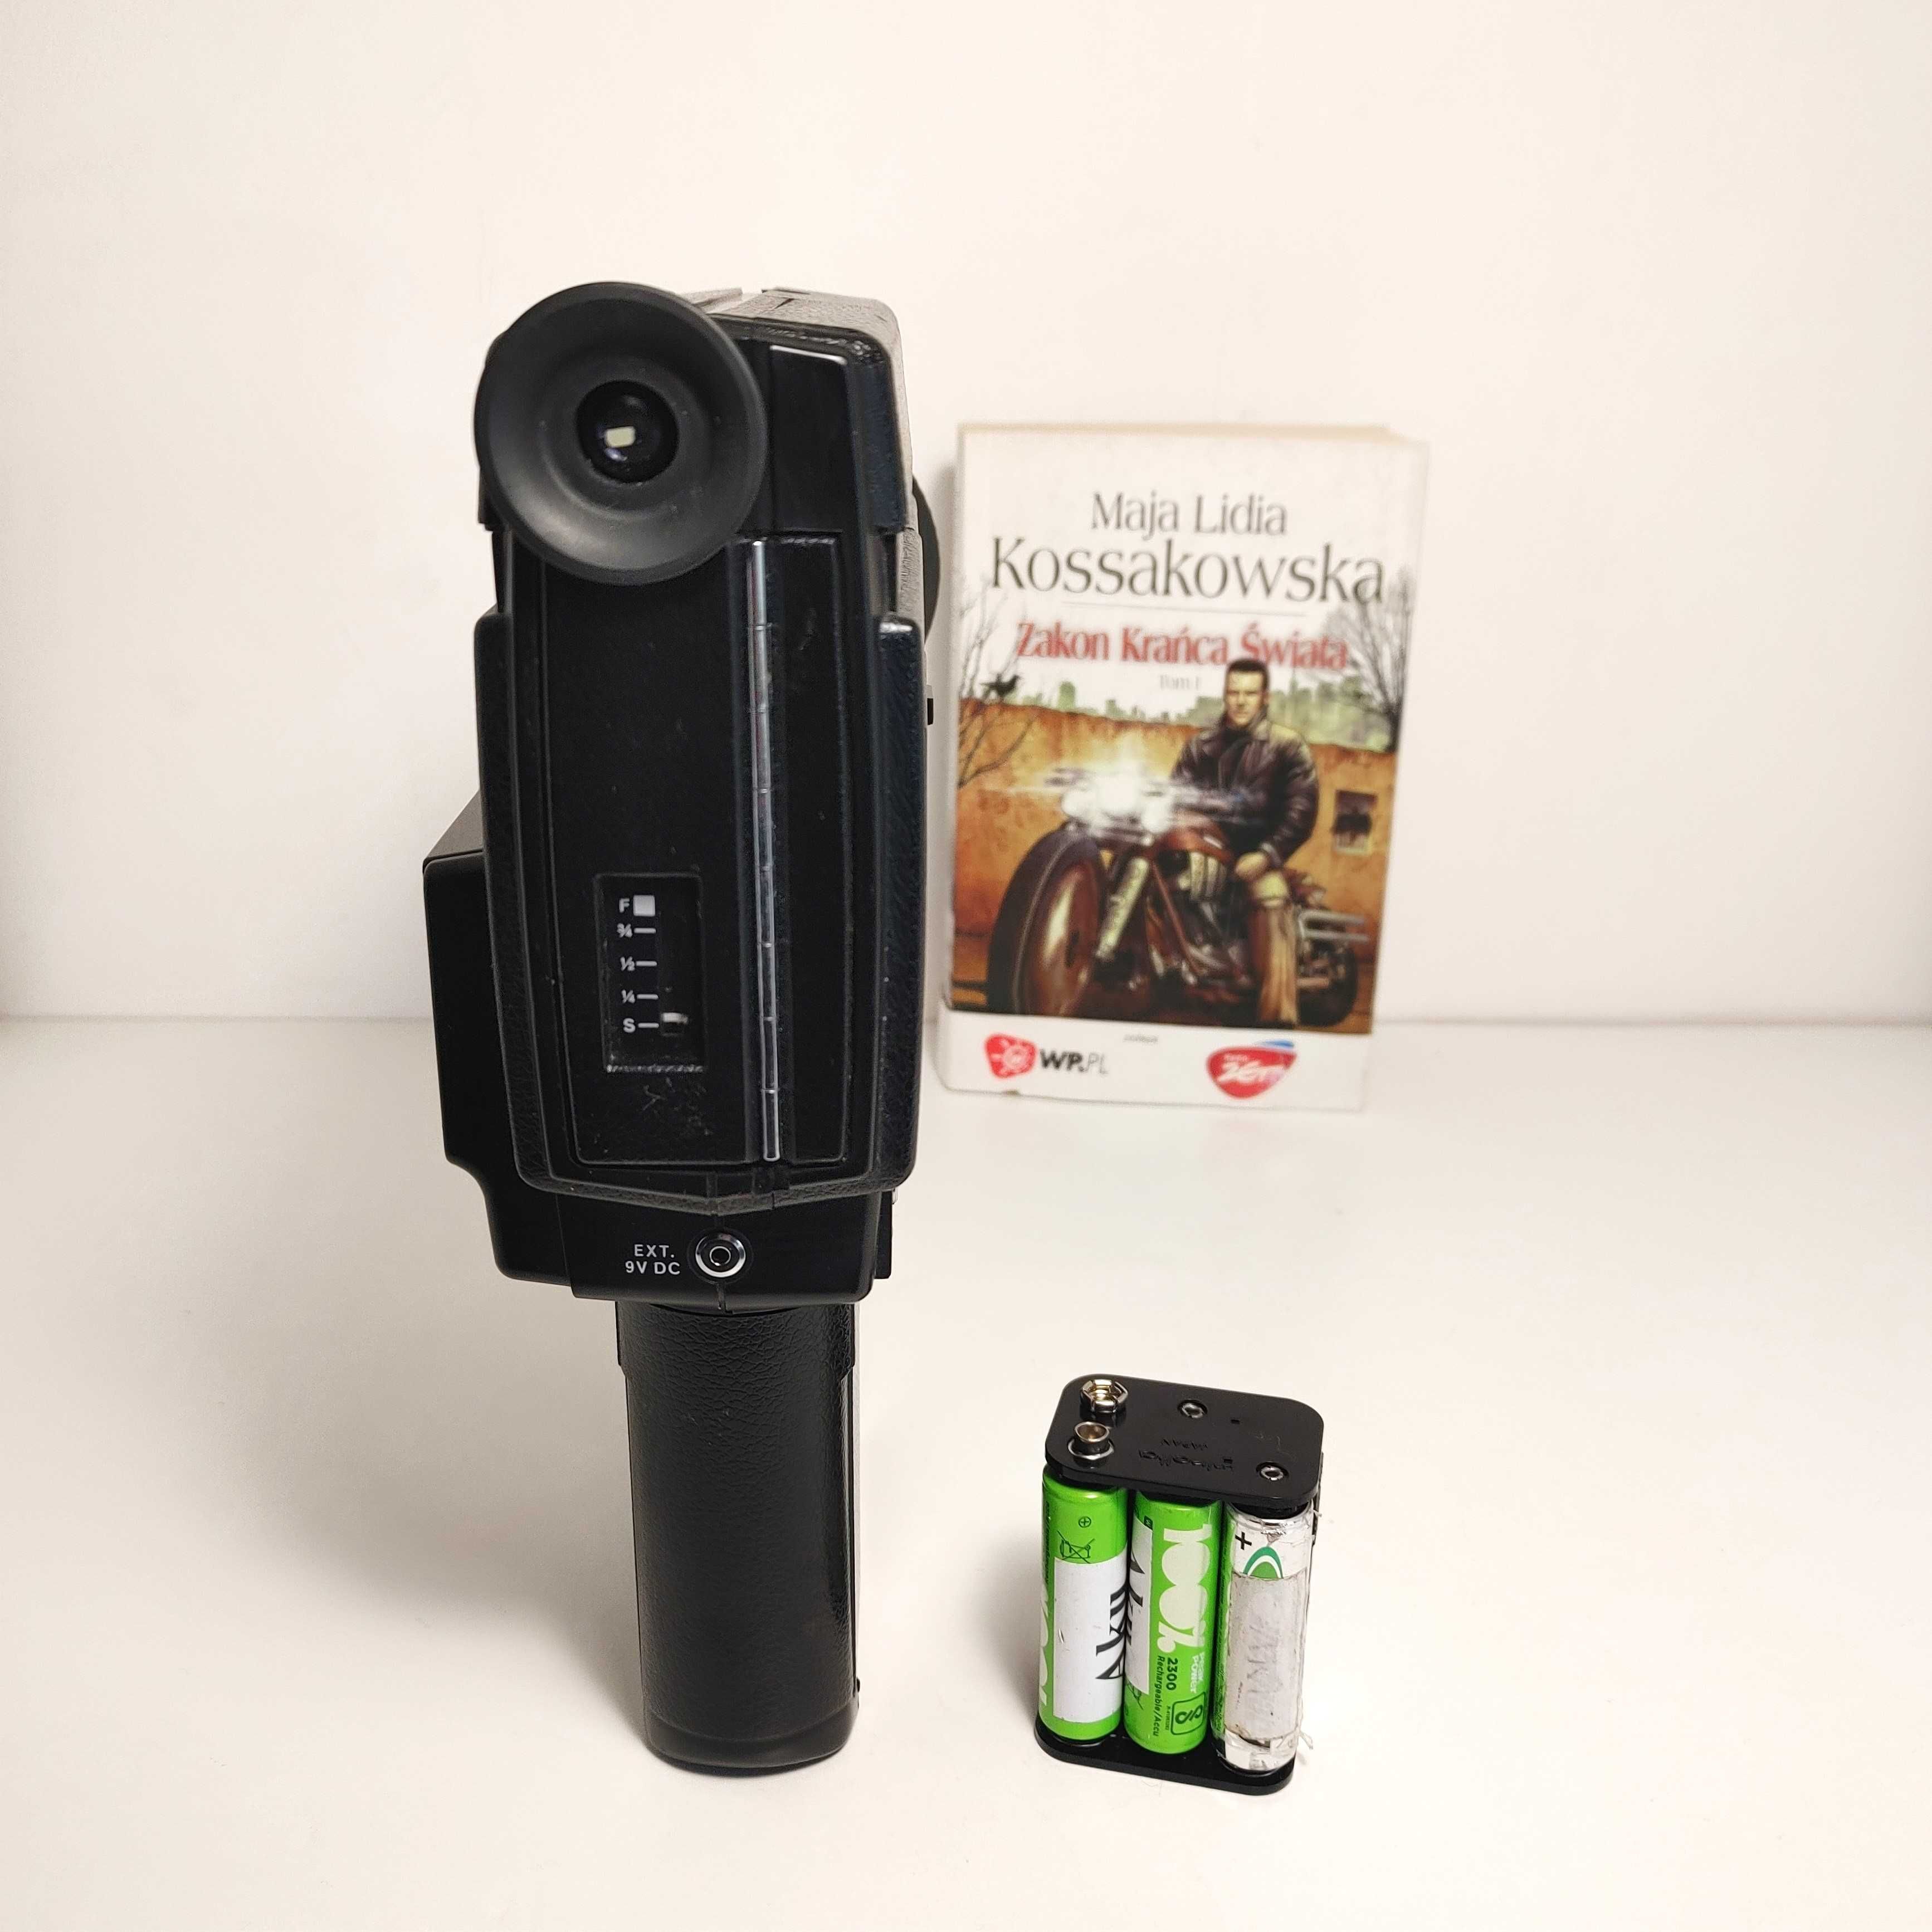 Kamera filmowa Super 8 Minolta XL-440 Sound - z rejestracją dźwięku